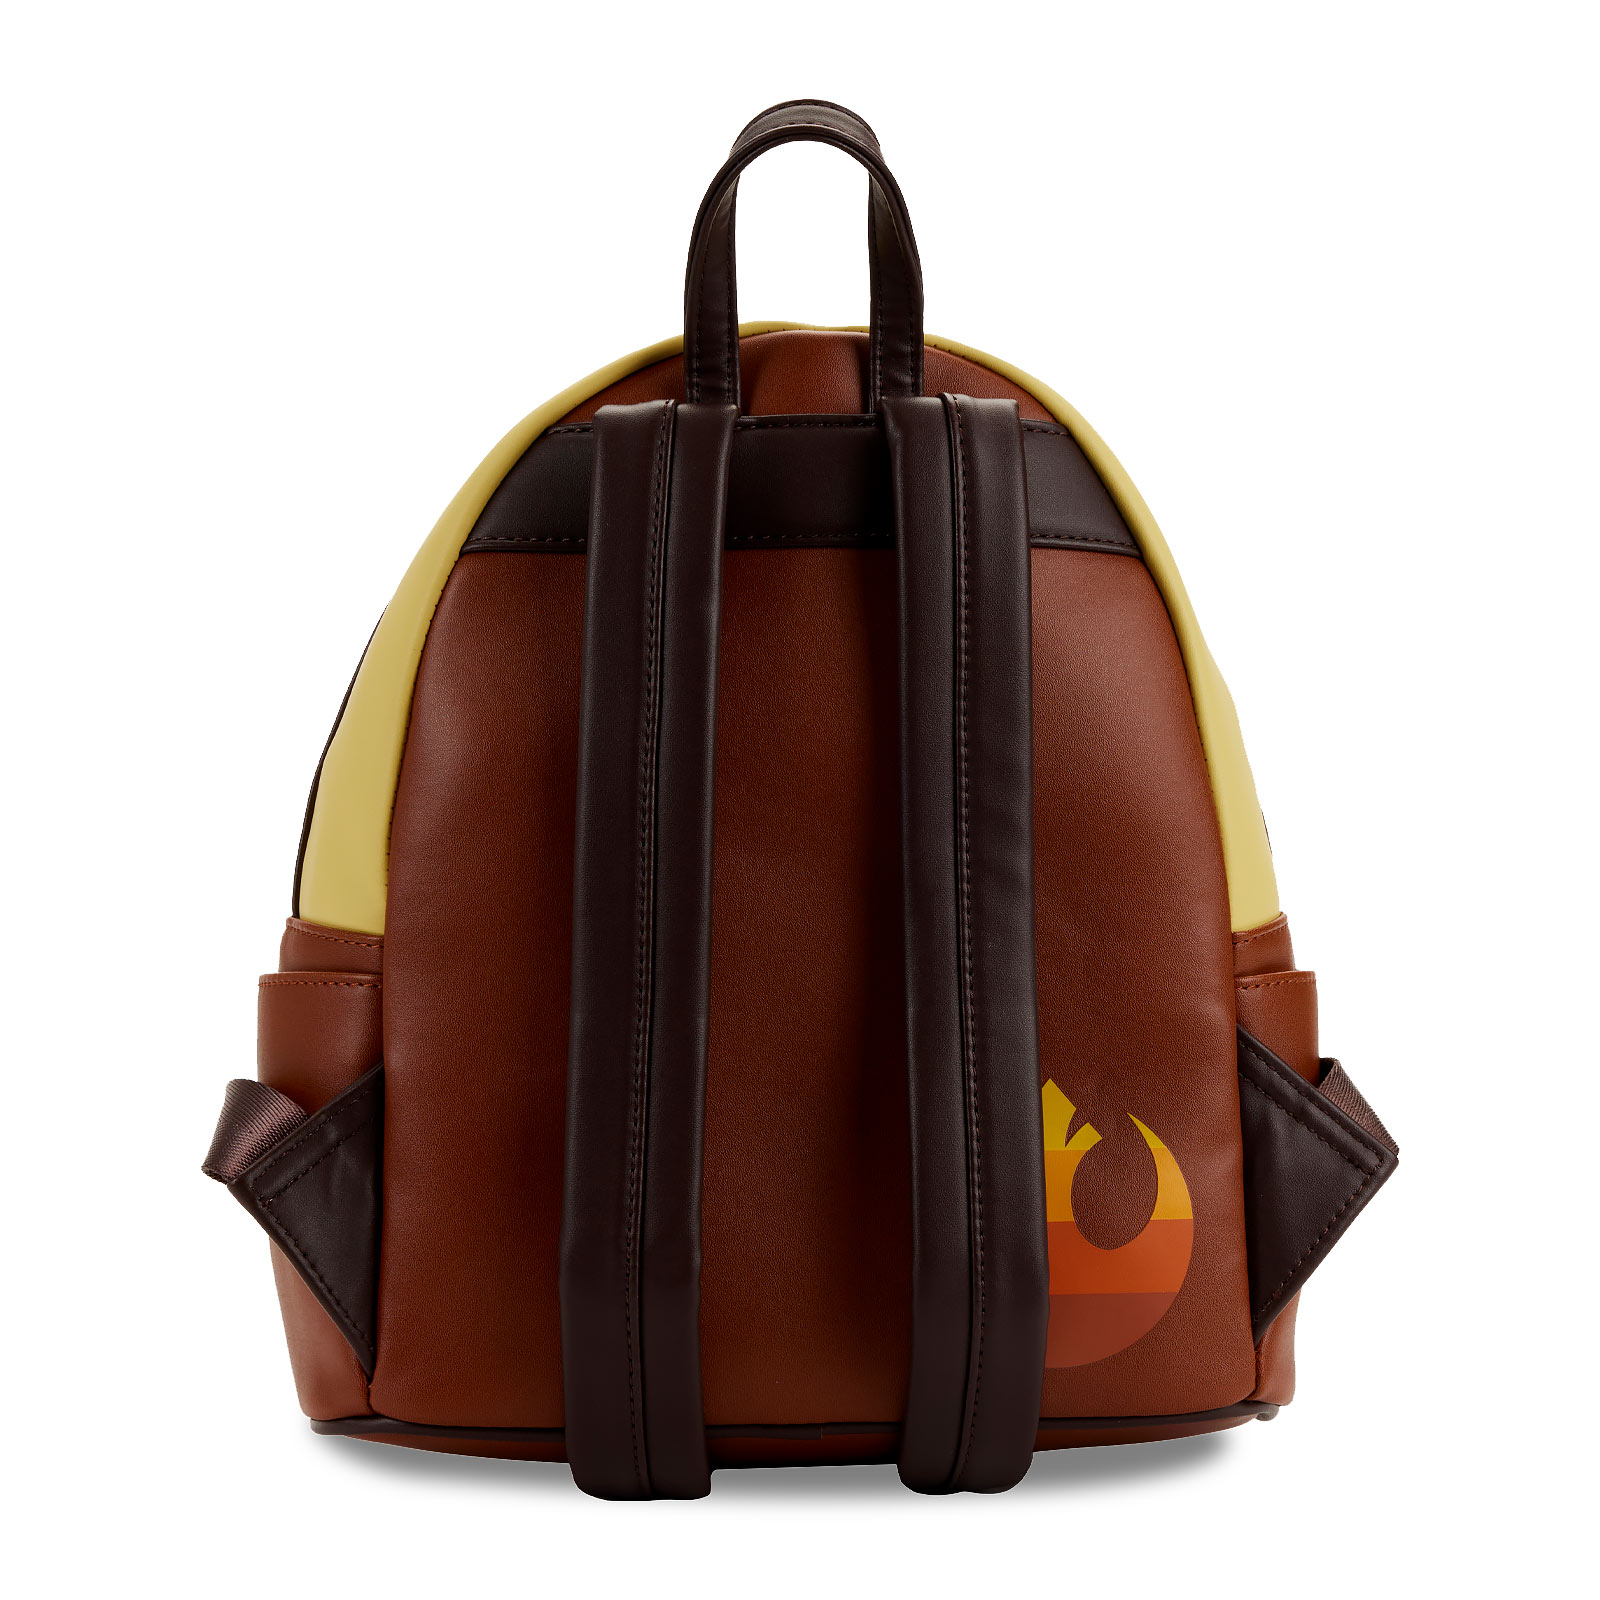 Star Wars - Jakku Mini Backpack